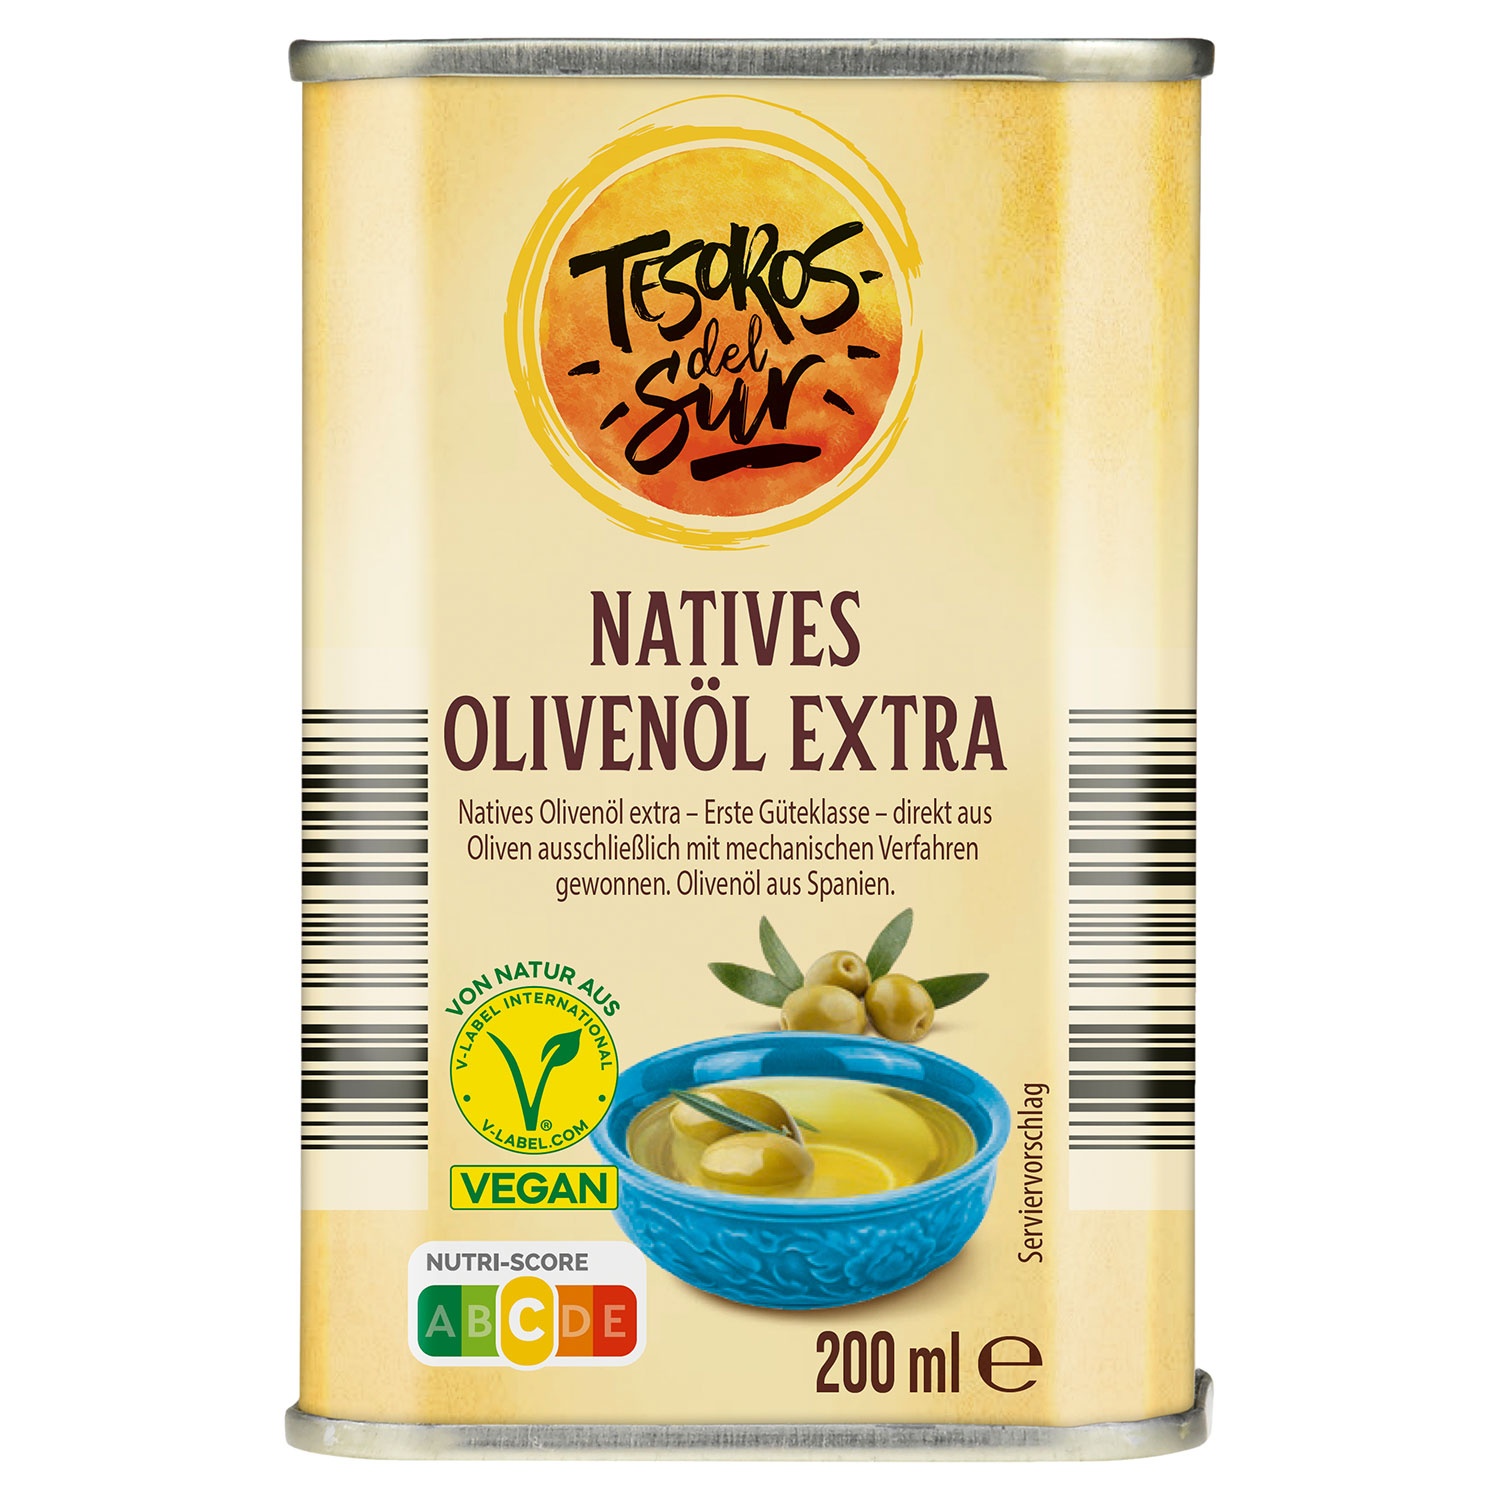 TESOROS DEL SUR Natives Olivenöl extra 200 ml